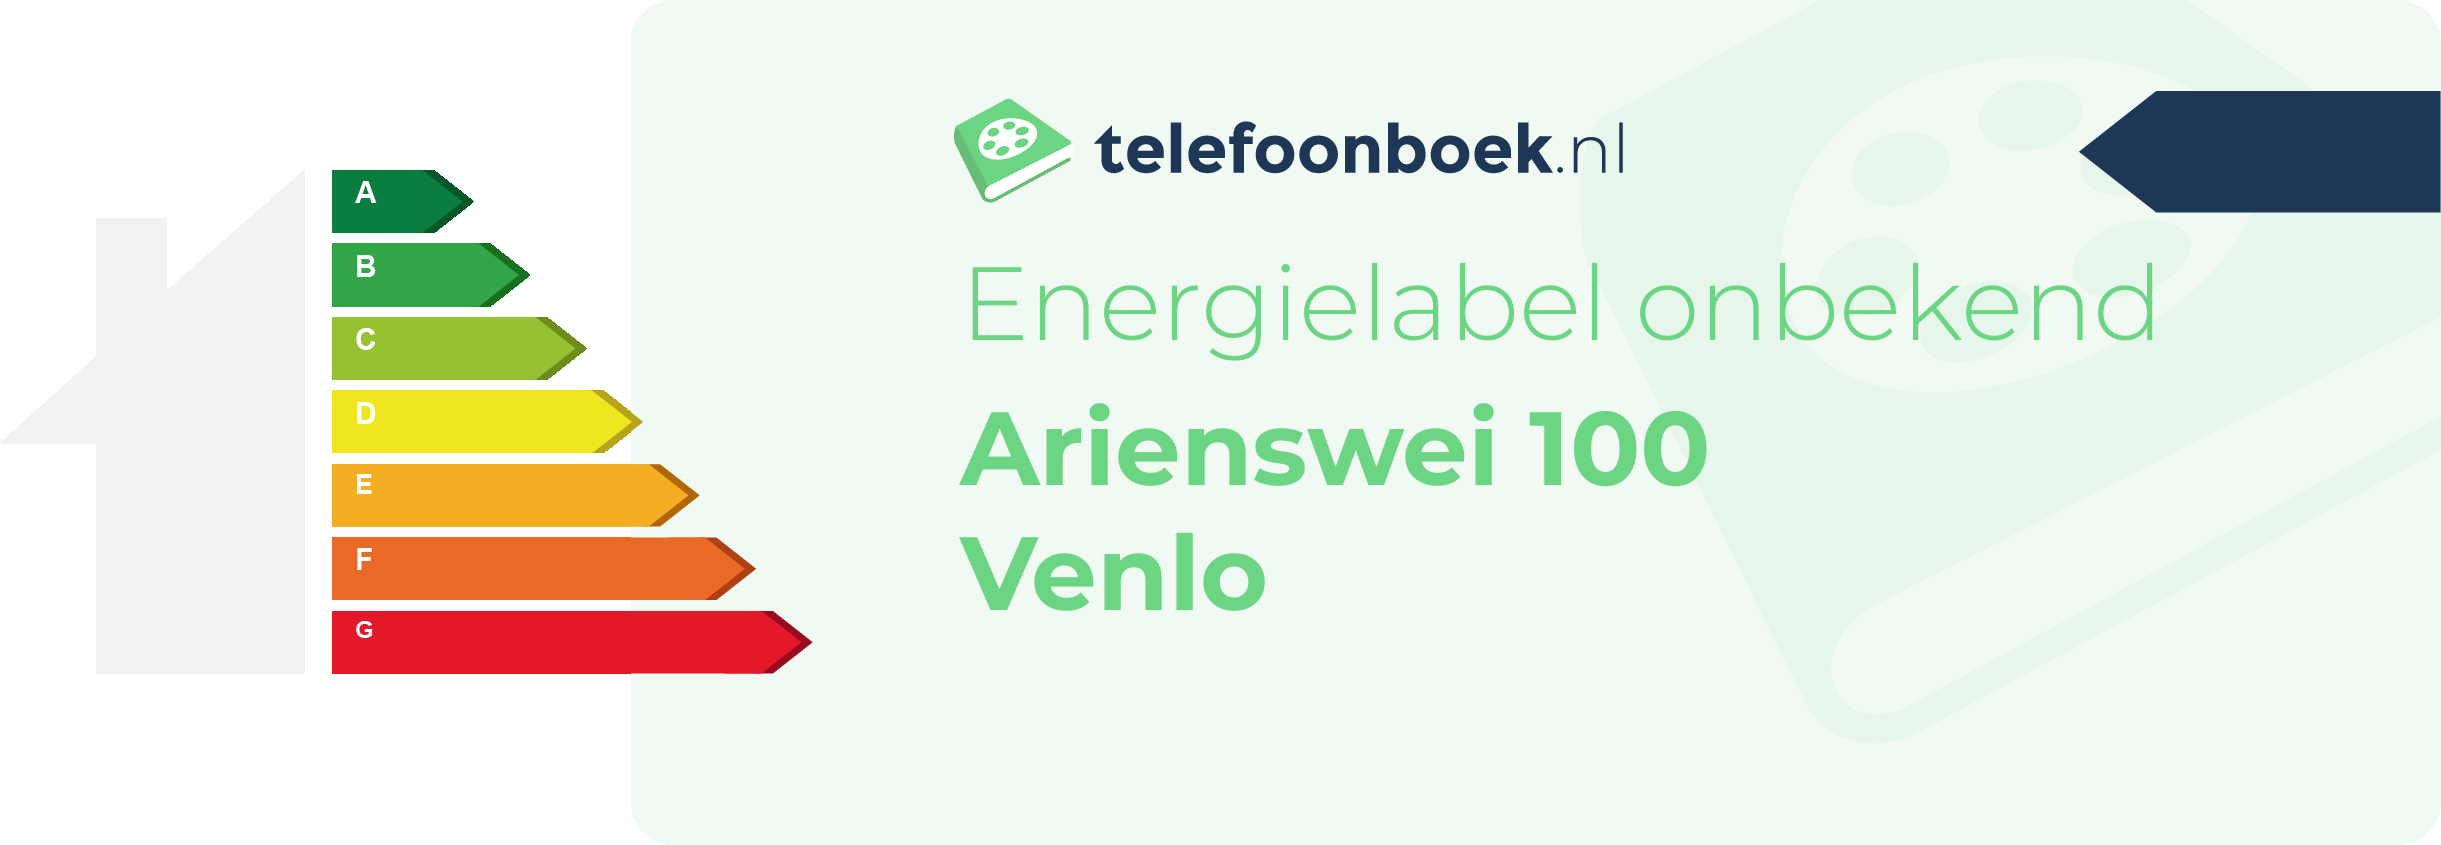 Energielabel Arienswei 100 Venlo